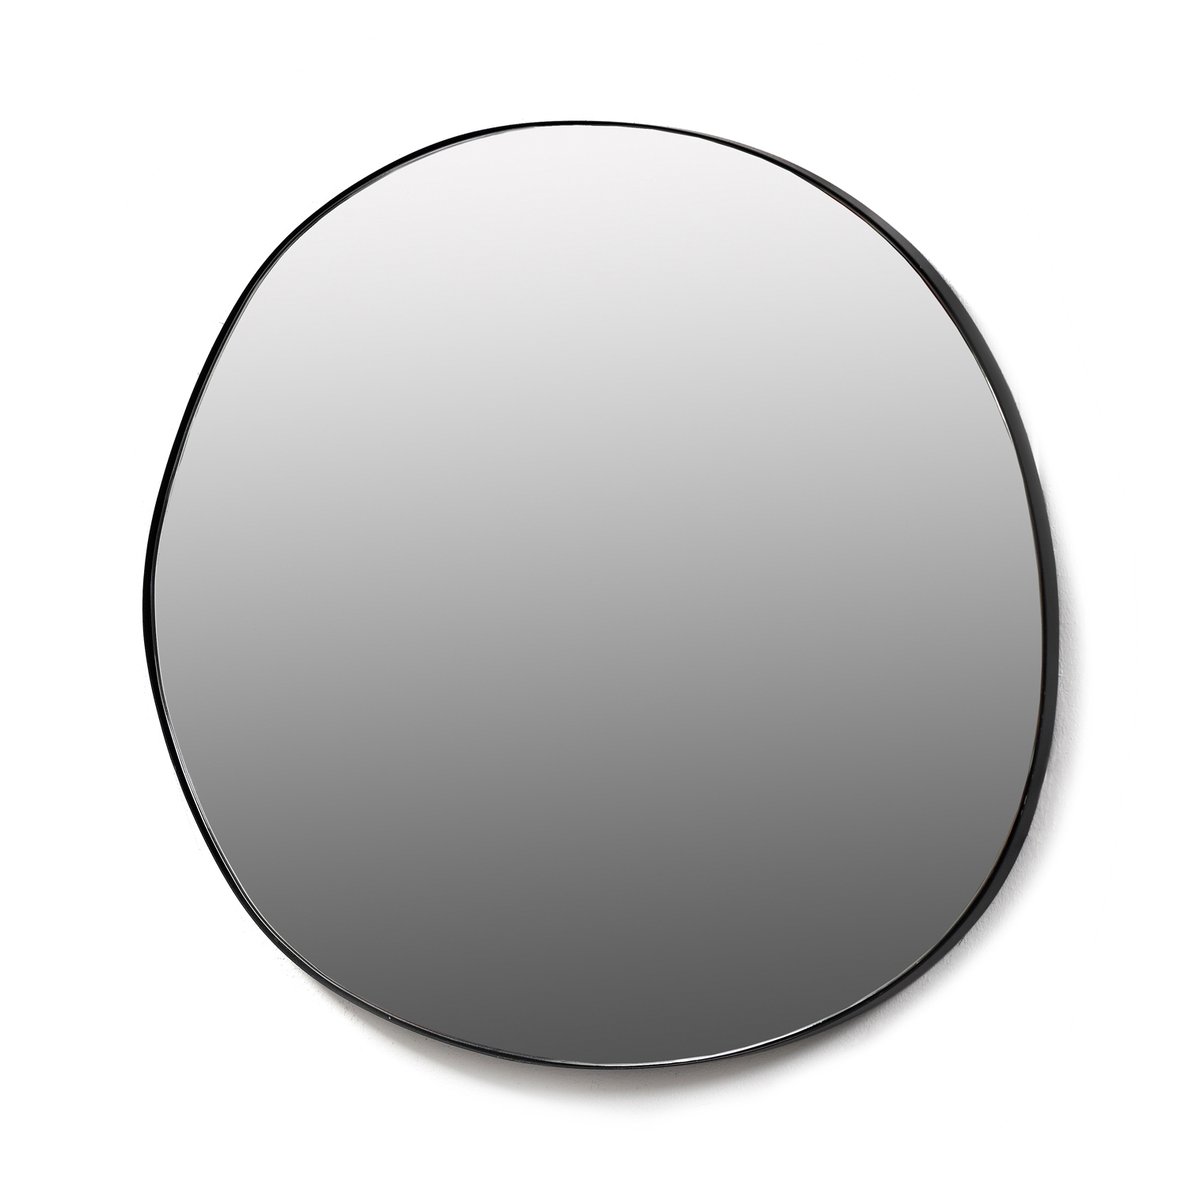 Serax Serax spiegel S 45x47 cm Black